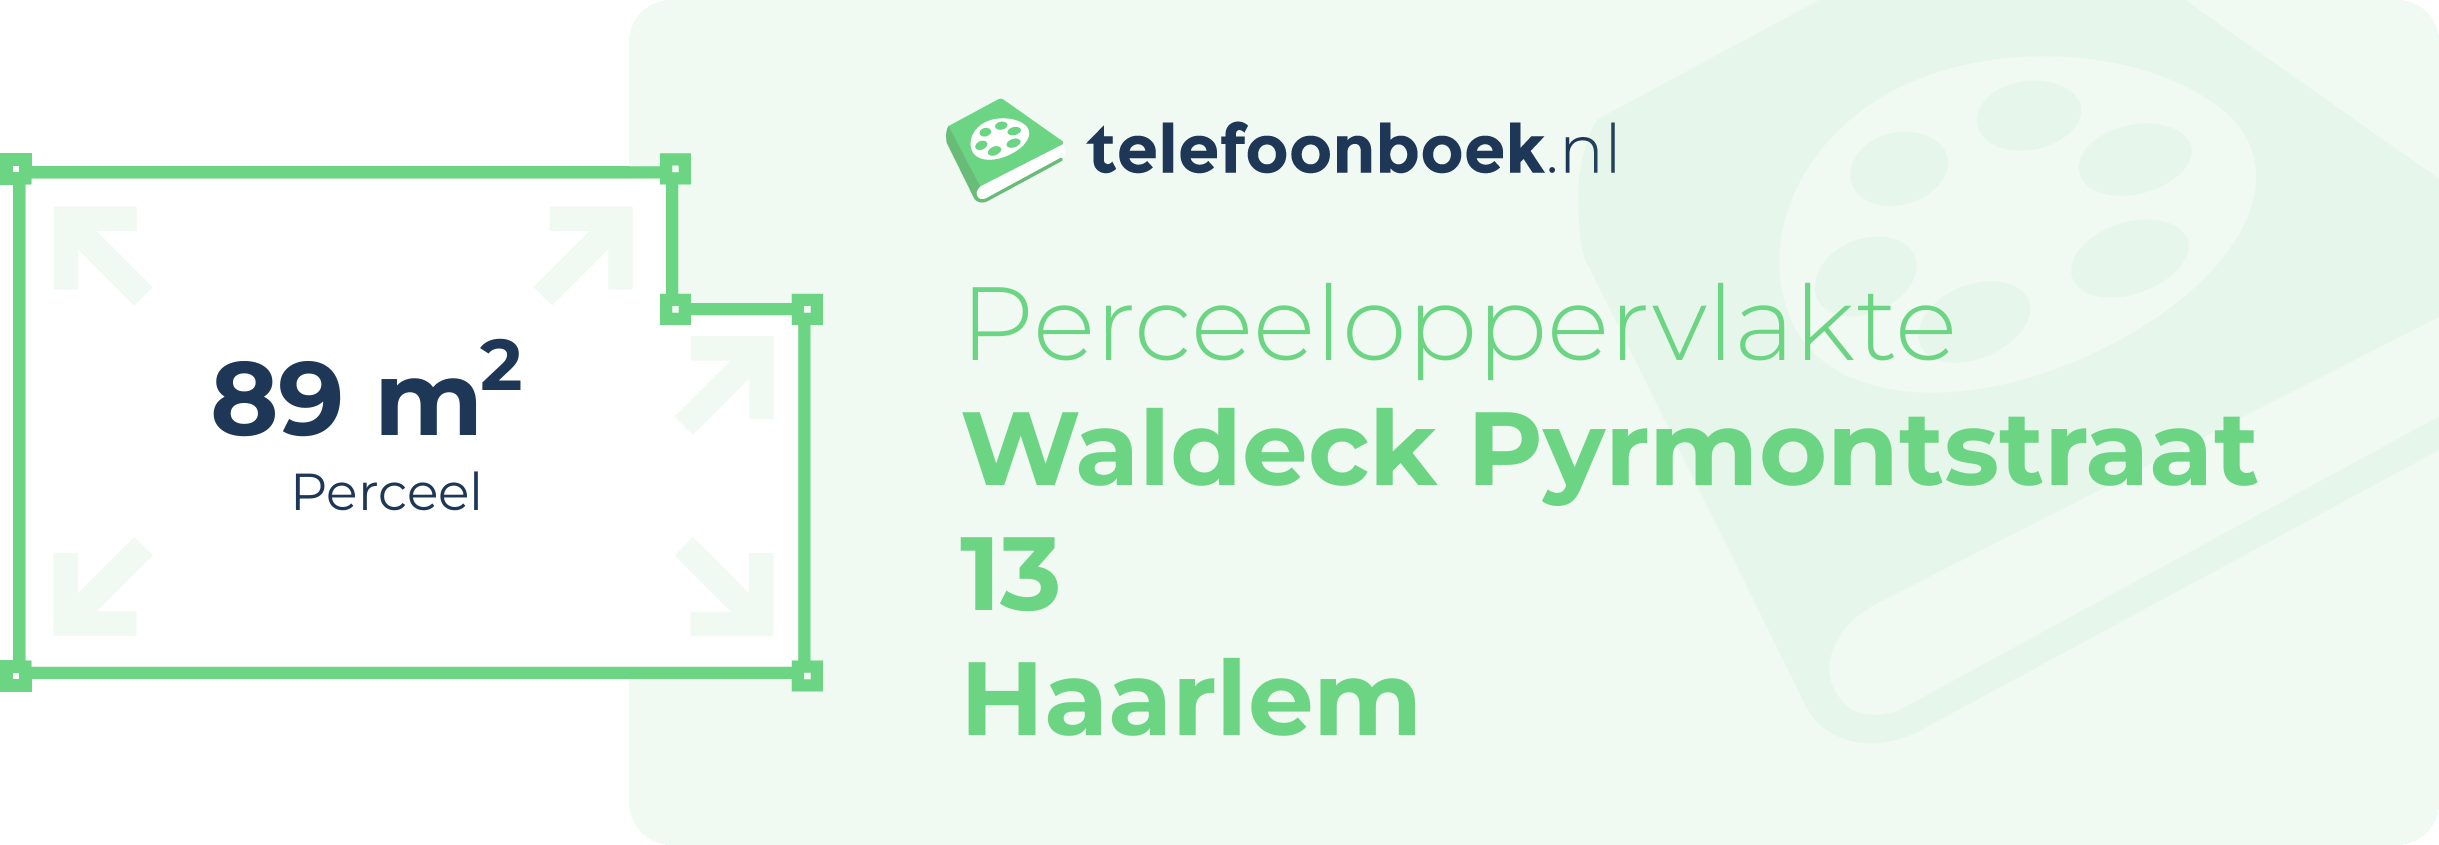 Perceeloppervlakte Waldeck Pyrmontstraat 13 Haarlem